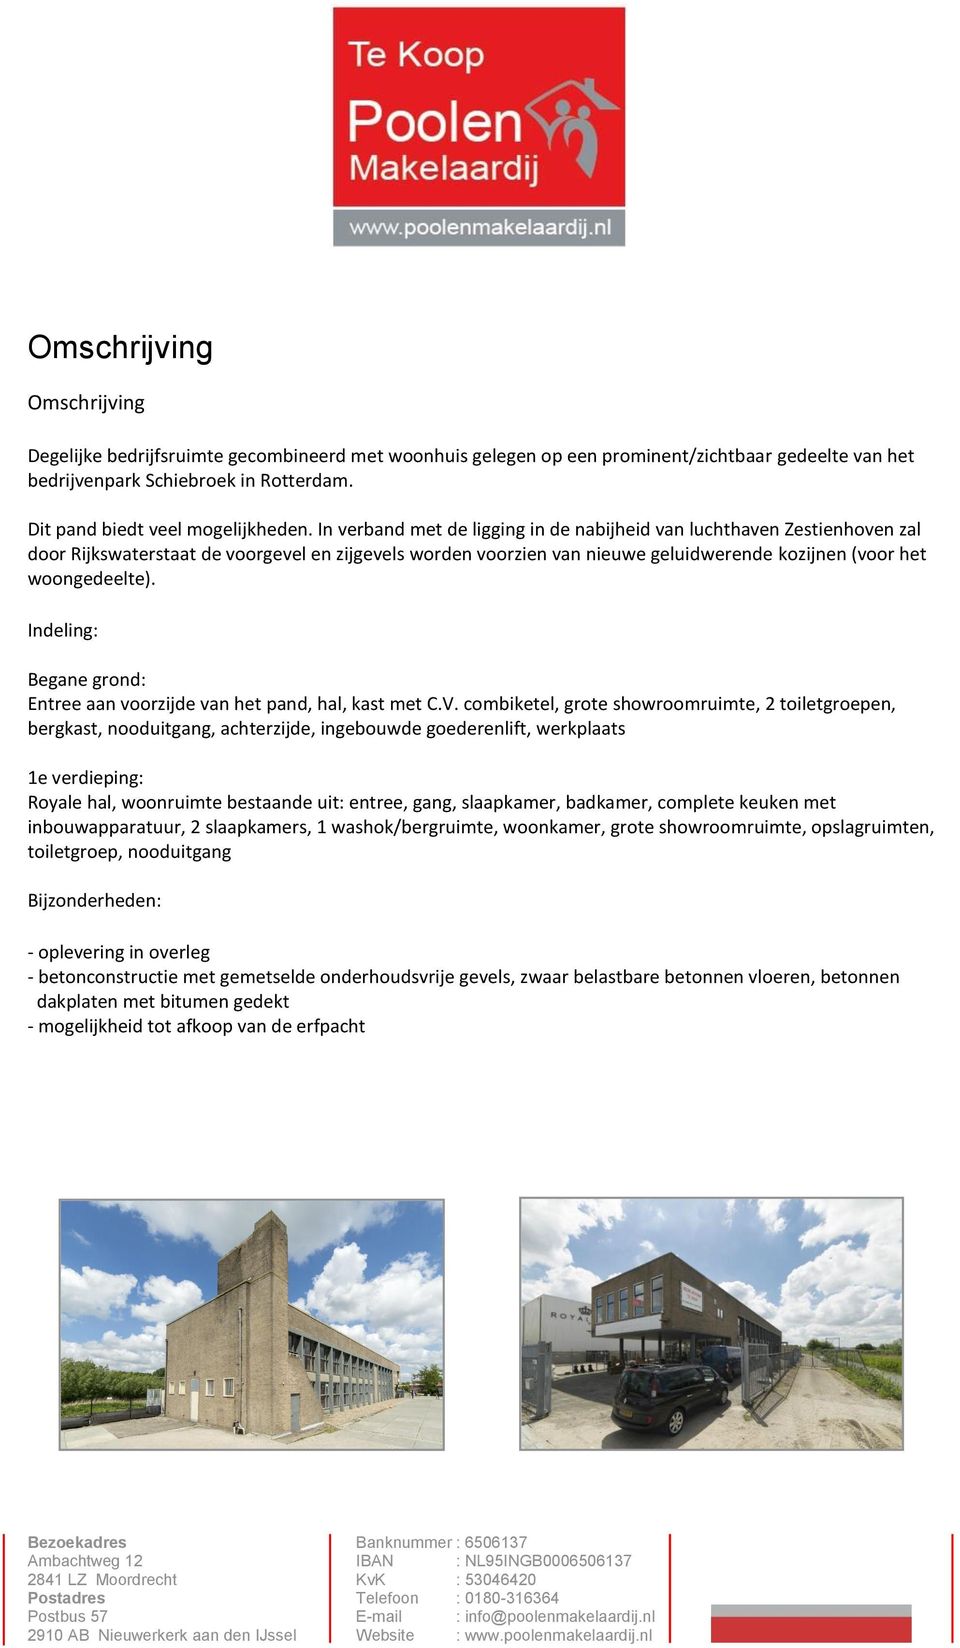 In verband met de ligging in de nabijheid van luchthaven Zestienhoven zal door Rijkswaterstaat de voorgevel en zijgevels worden voorzien van nieuwe geluidwerende kozijnen (voor het woongedeelte).